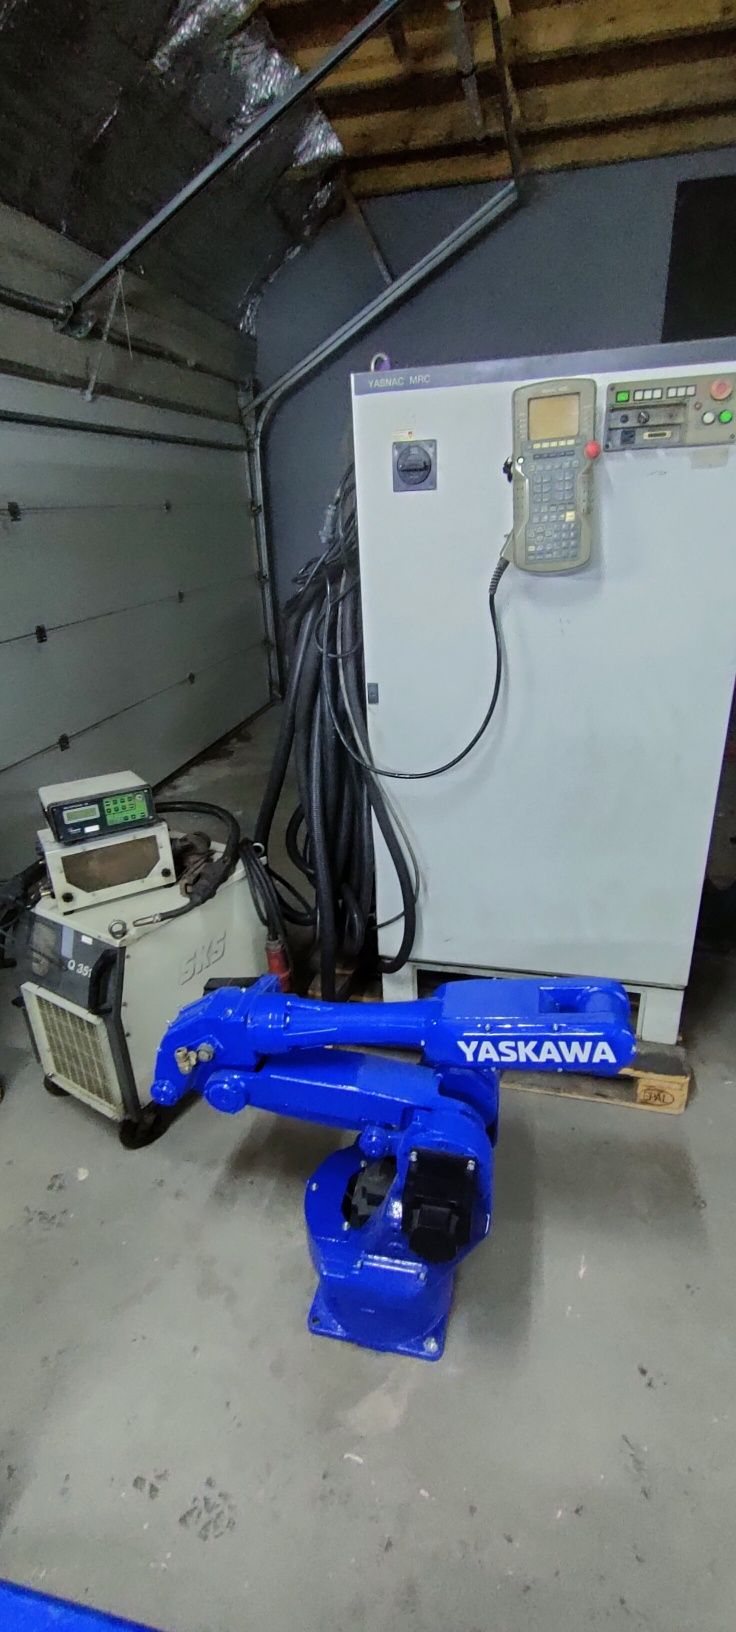 Robot przemysłowy spawalniczy Yaskawa MOTOMAN + spawarka